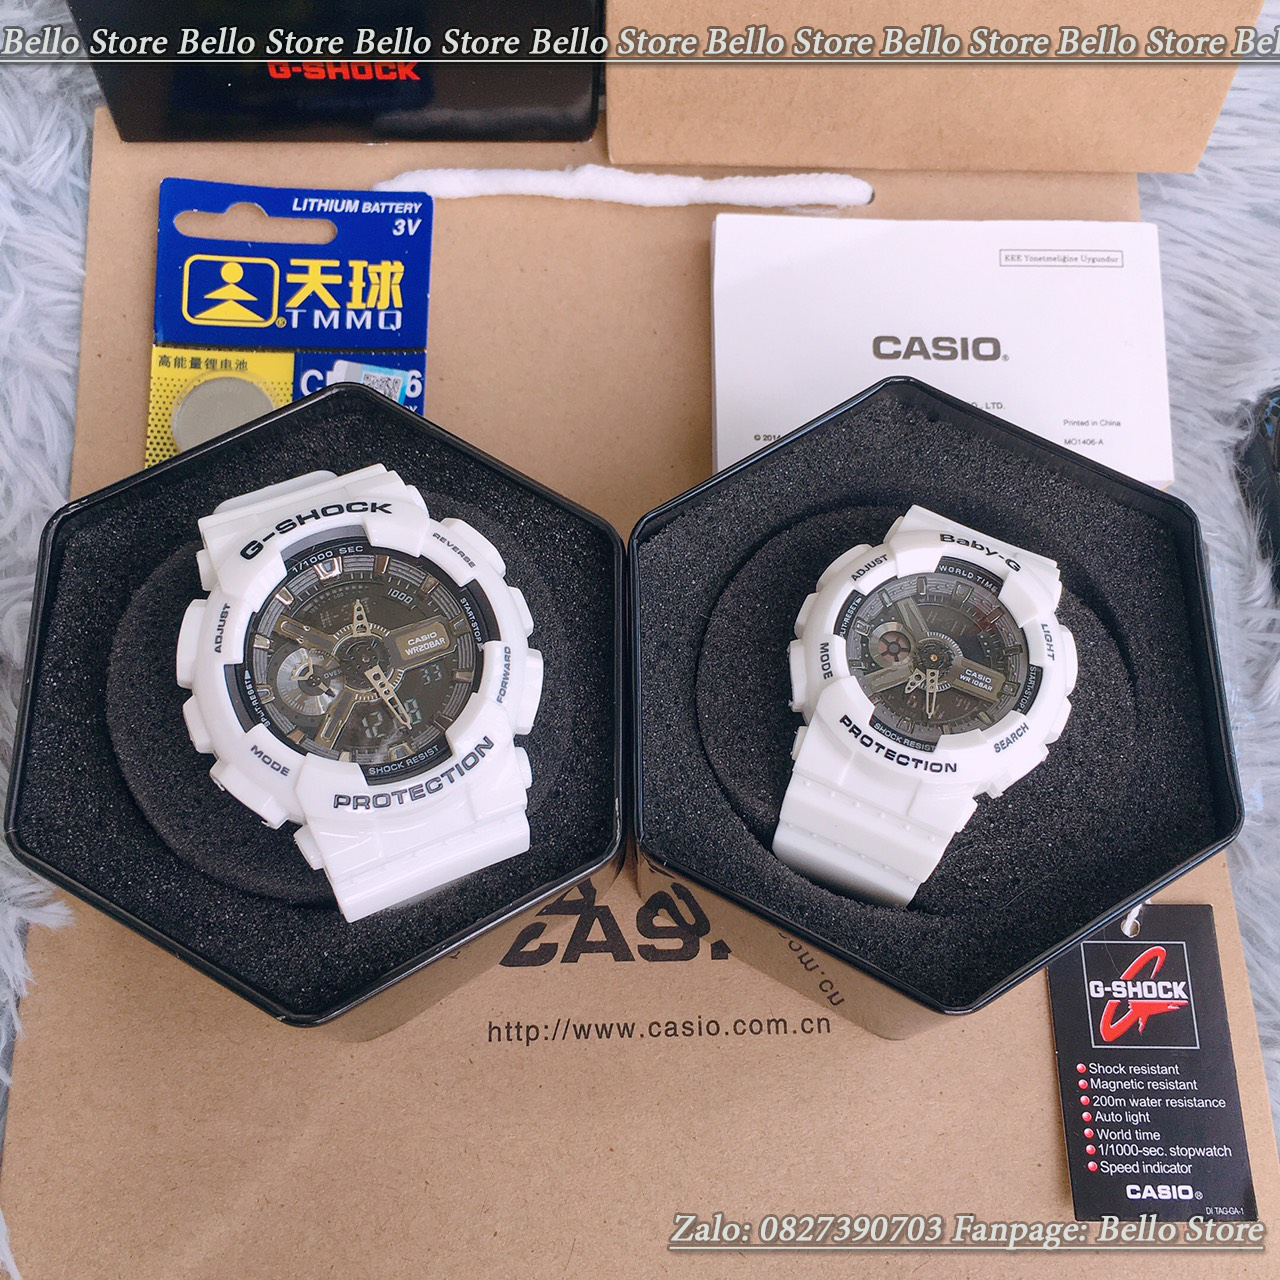 Đồng hồ thể thao nam G-Shock GA-110GW-7A ( TRẮNG MẶT ĐEN) Có Baby-g và đôi nam nữ + Made in JAPAN, chống nước 200M, Tặng kèm pin dự phòng, Bảo hành 12 tháng - BELLO Store